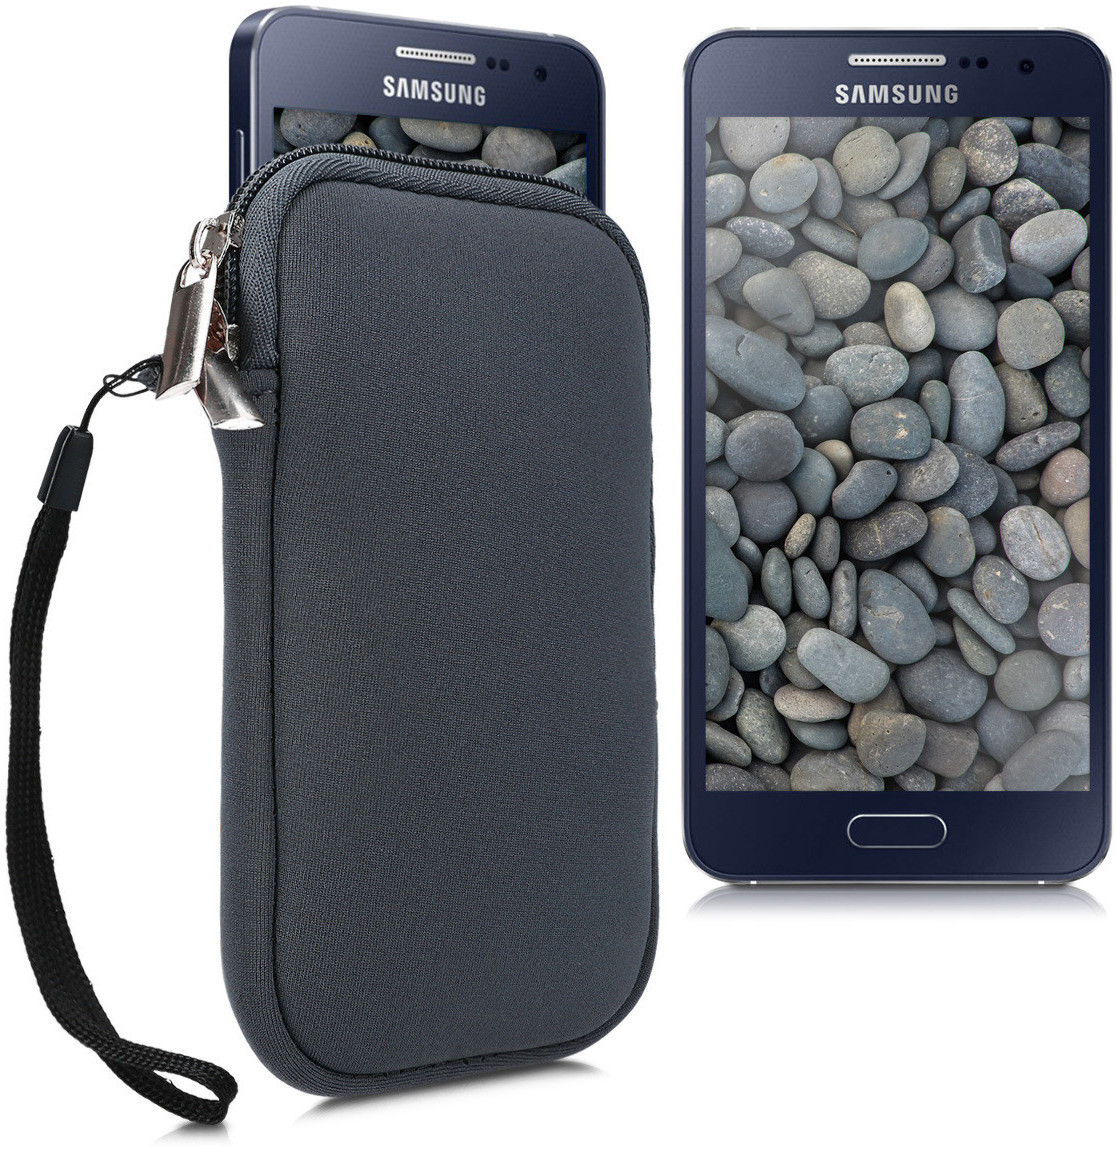 kwmobile Handytasche für Smartphones M - 5,5 - Neopren Handy Tasche Hülle  Cover Case Schutzhülle Rot - 15,2 x 8,3 cm Innenmaße ab 7,55 €